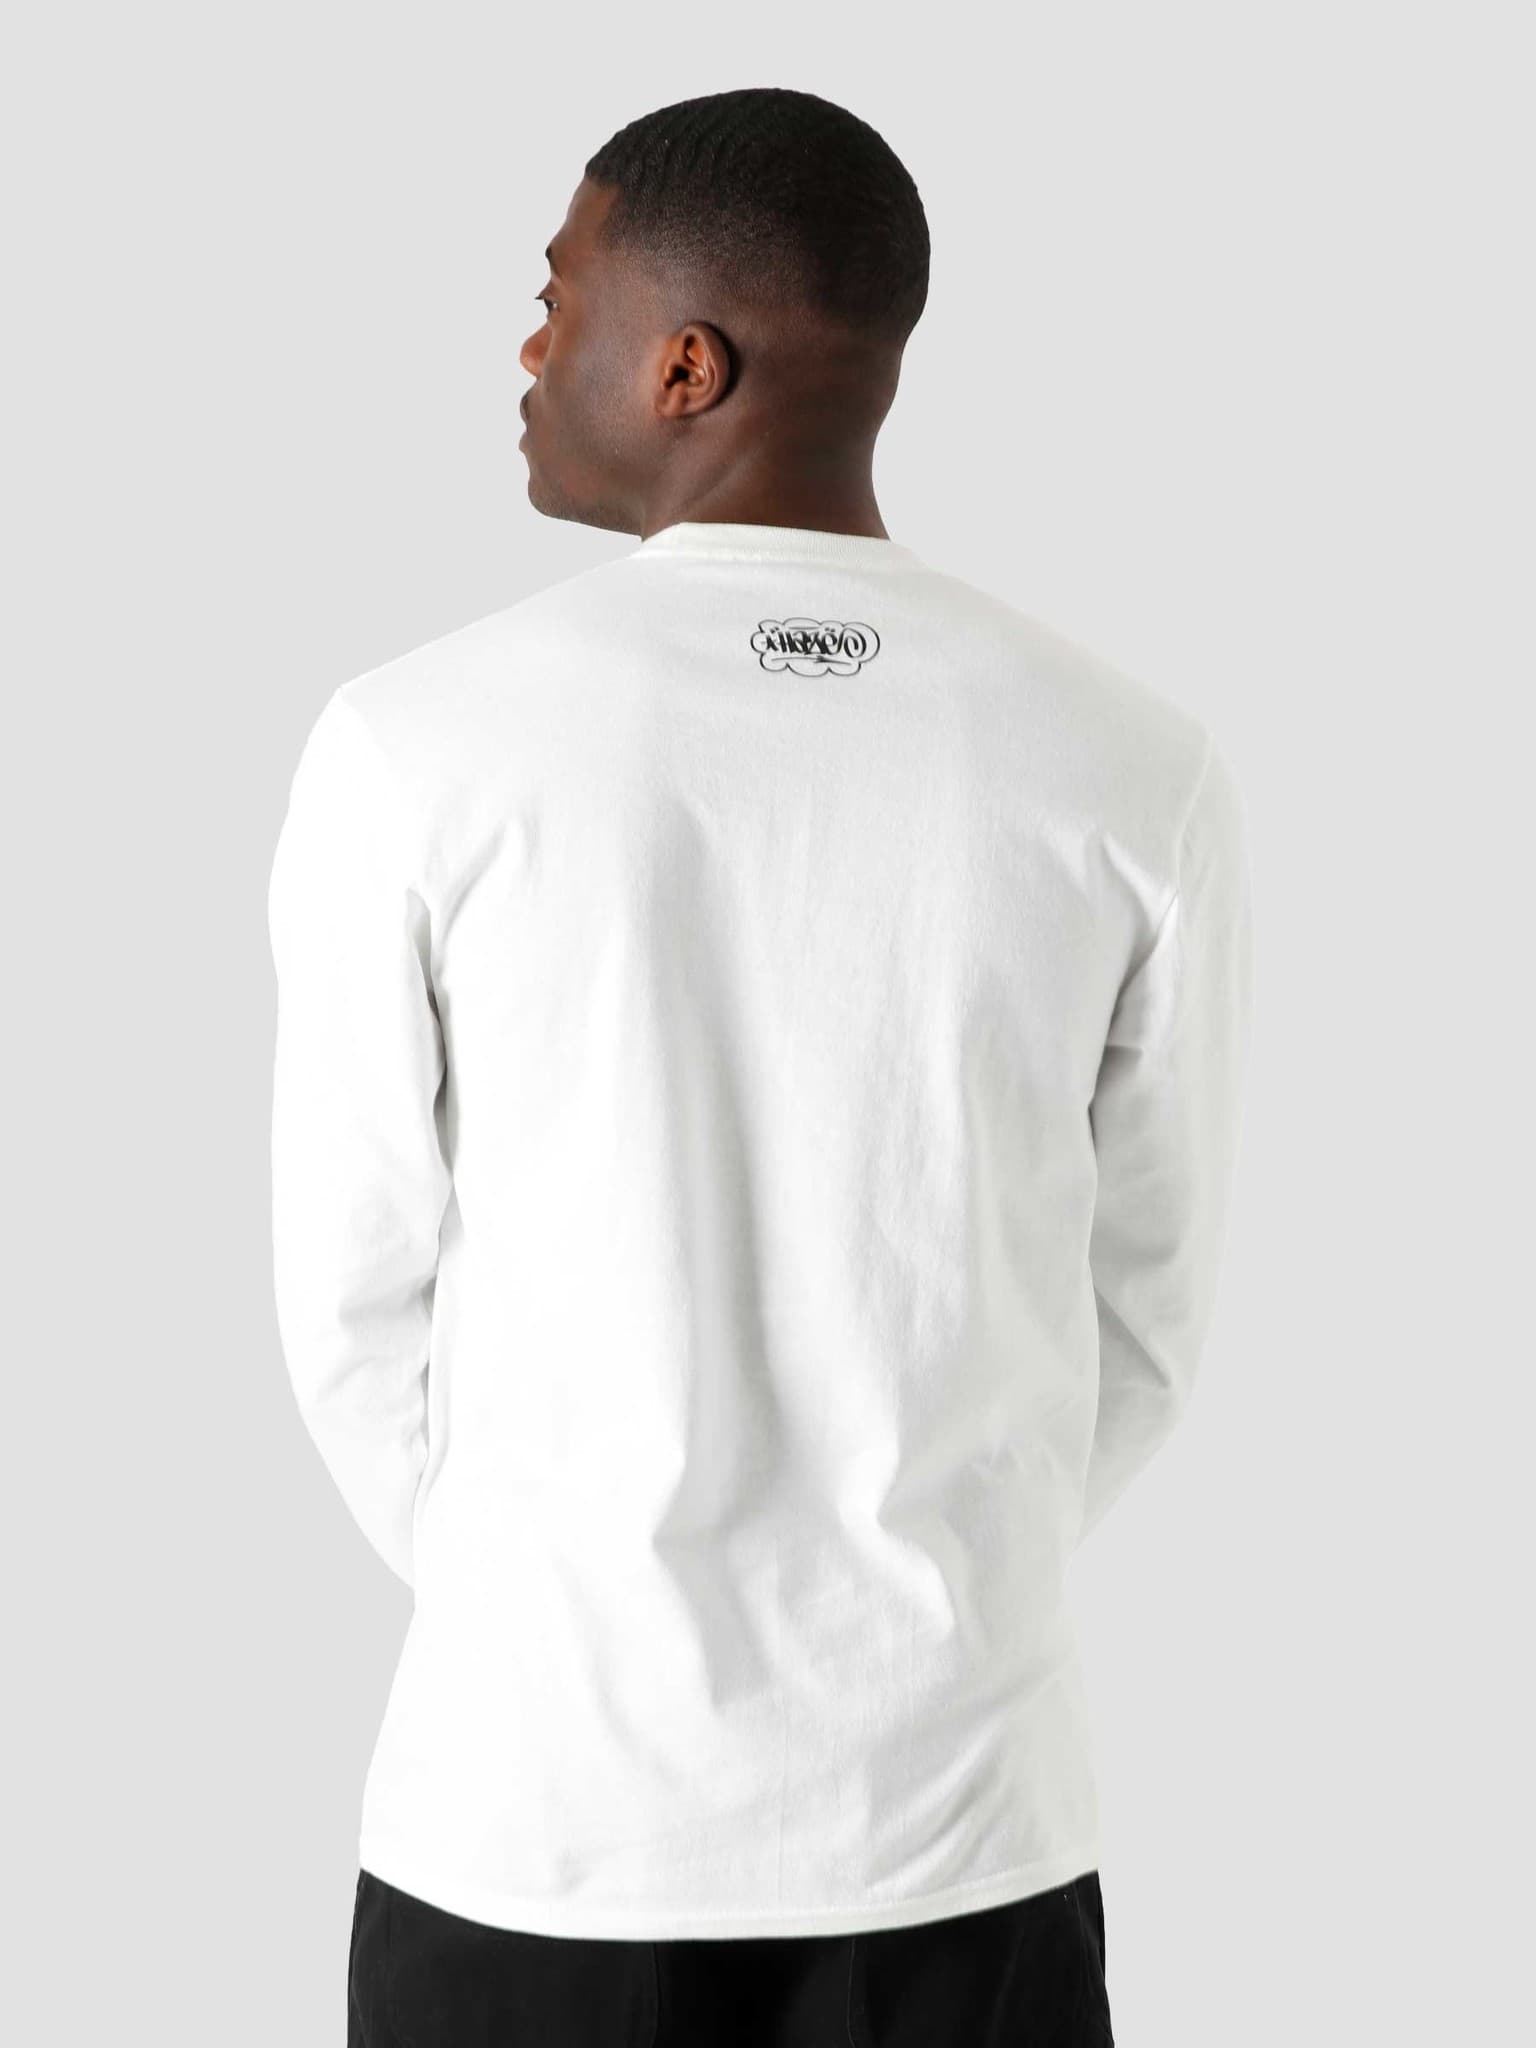 Haze Remix T-Shirt White TS01381